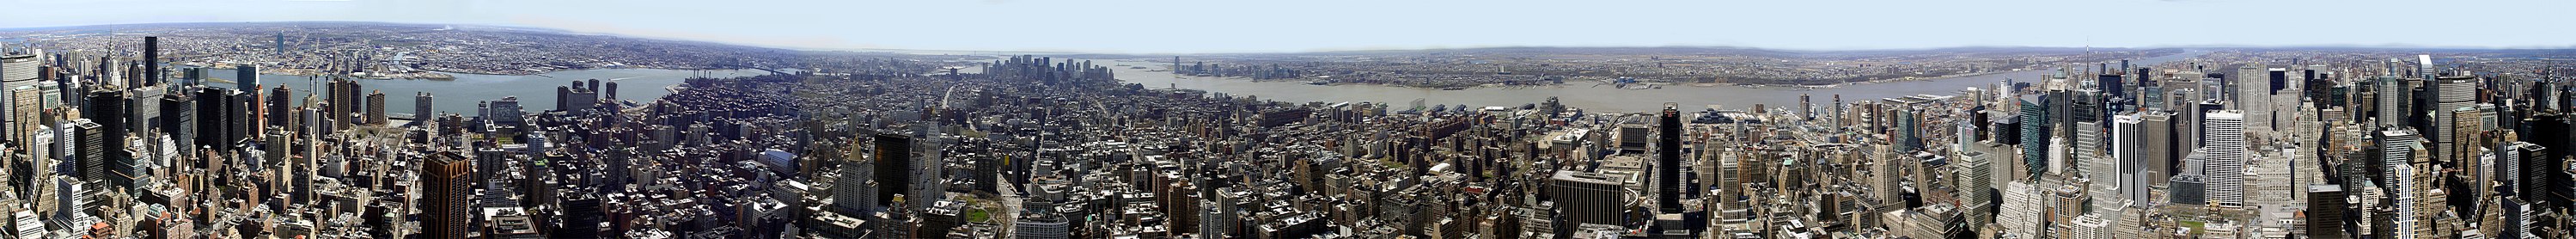 צילום היקפי 180 מעלות של ניו יורק ממרפסת התצפית בבניין אמפייר סטייט